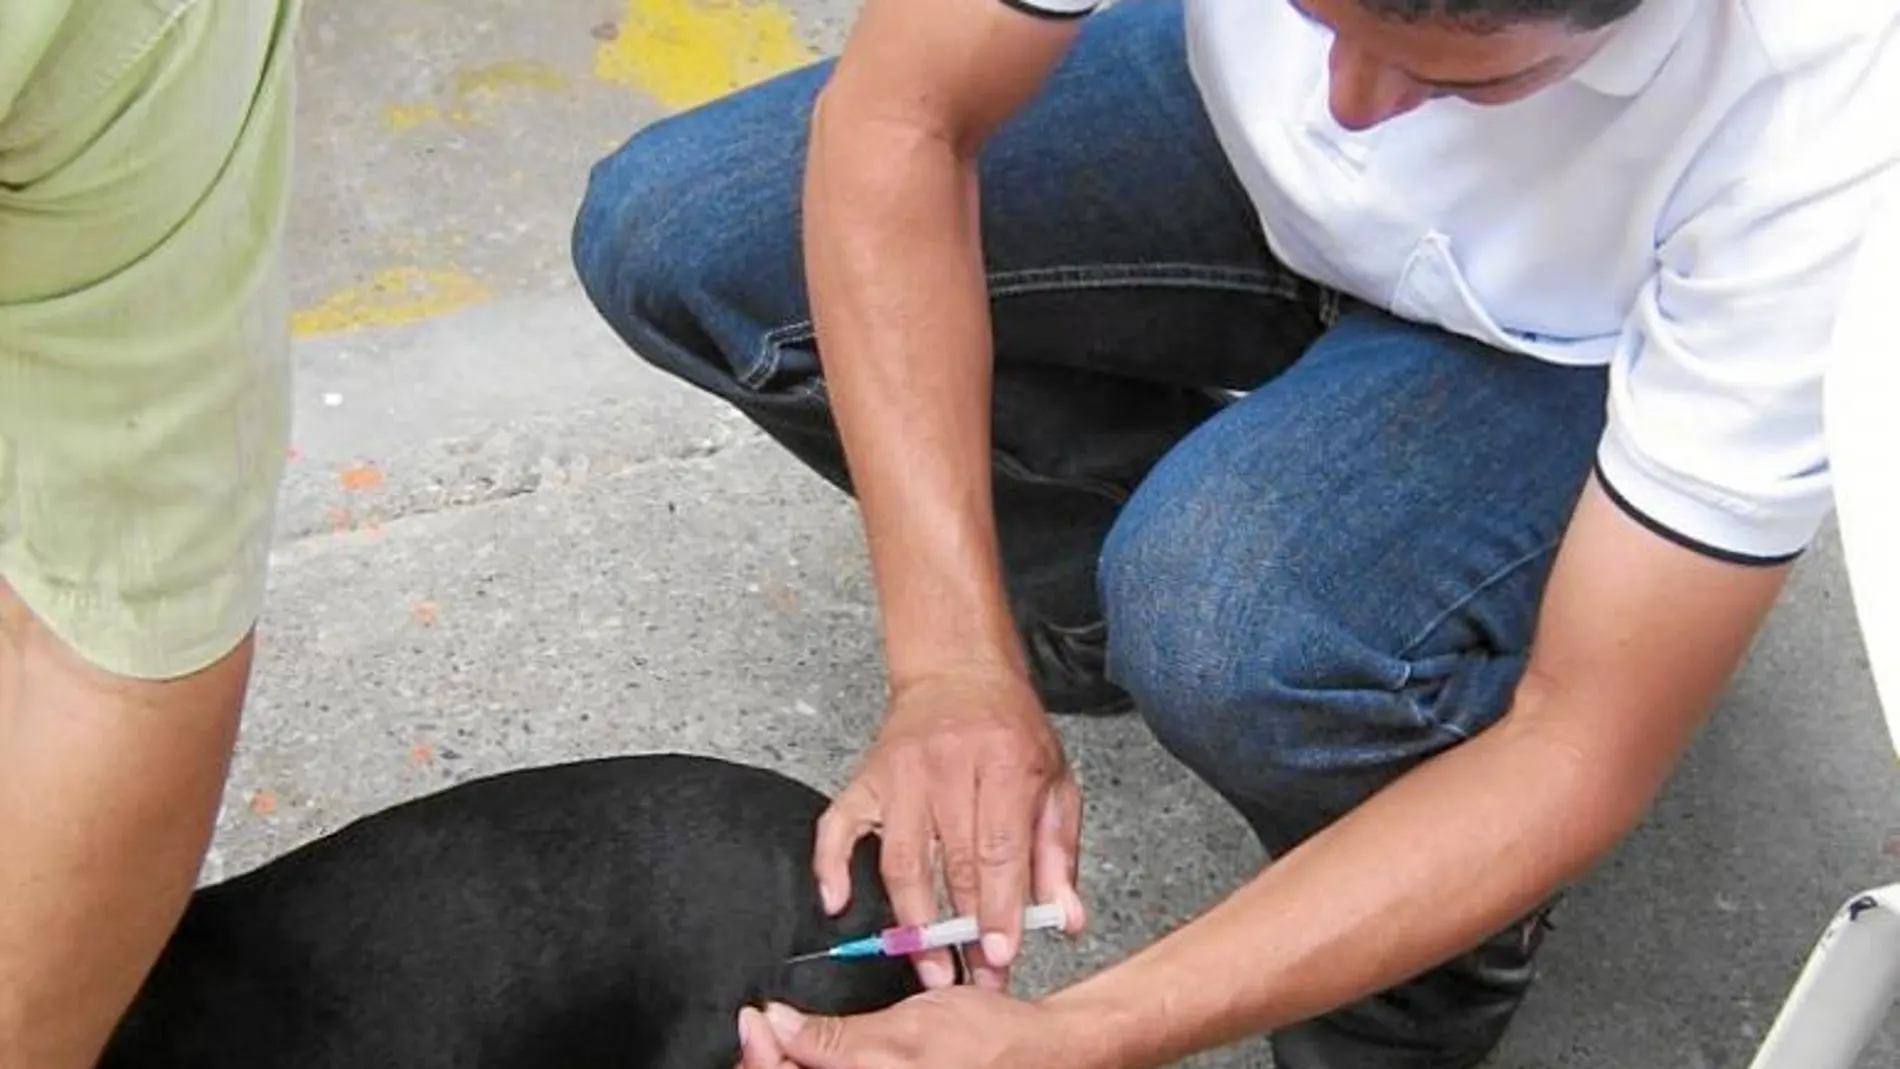 El perro portador de la rabia estuvo en Piera, Montcada, Porqueres, Banyoles y Barcelona. Los veterinarios instan a vacunar a los animales de estos municipios